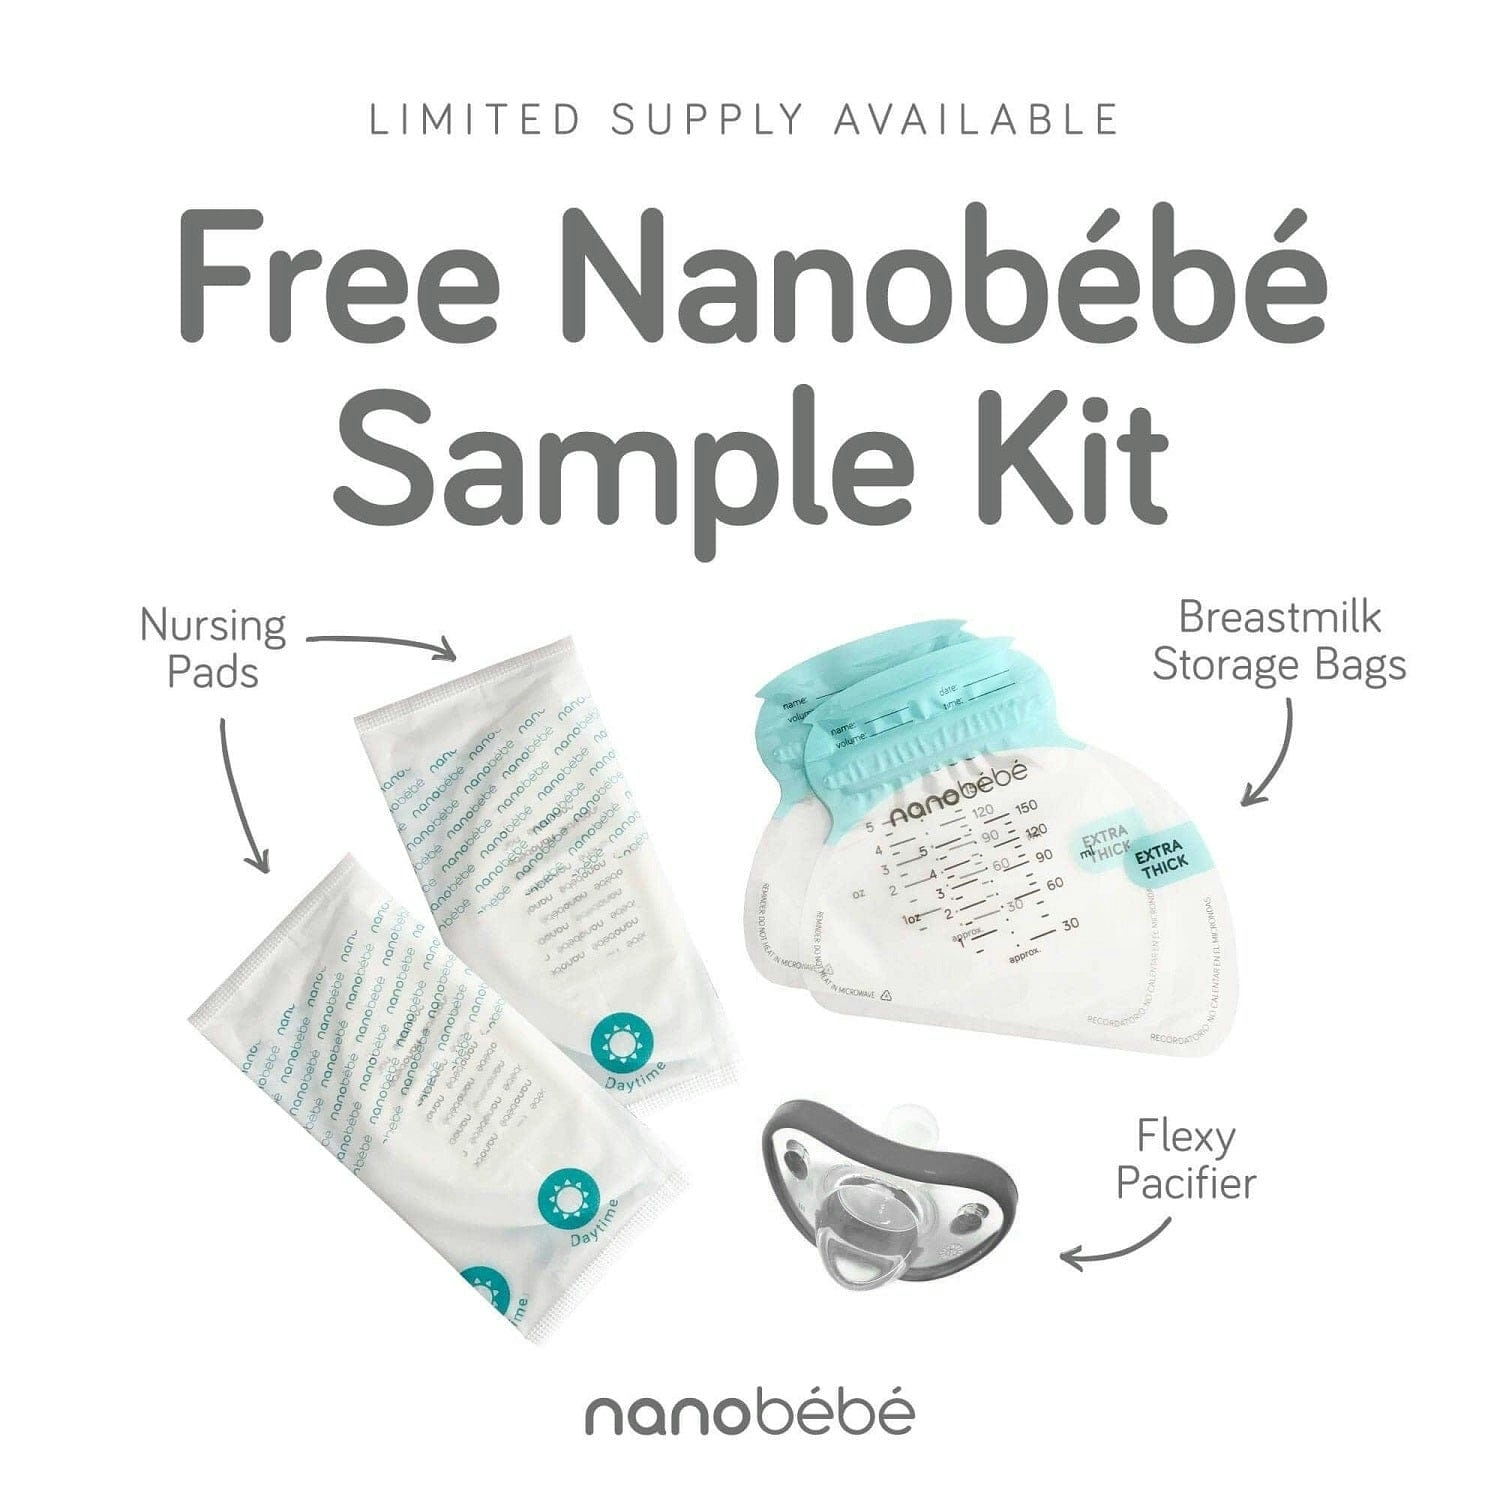 Free Nanobébé Sample Kit